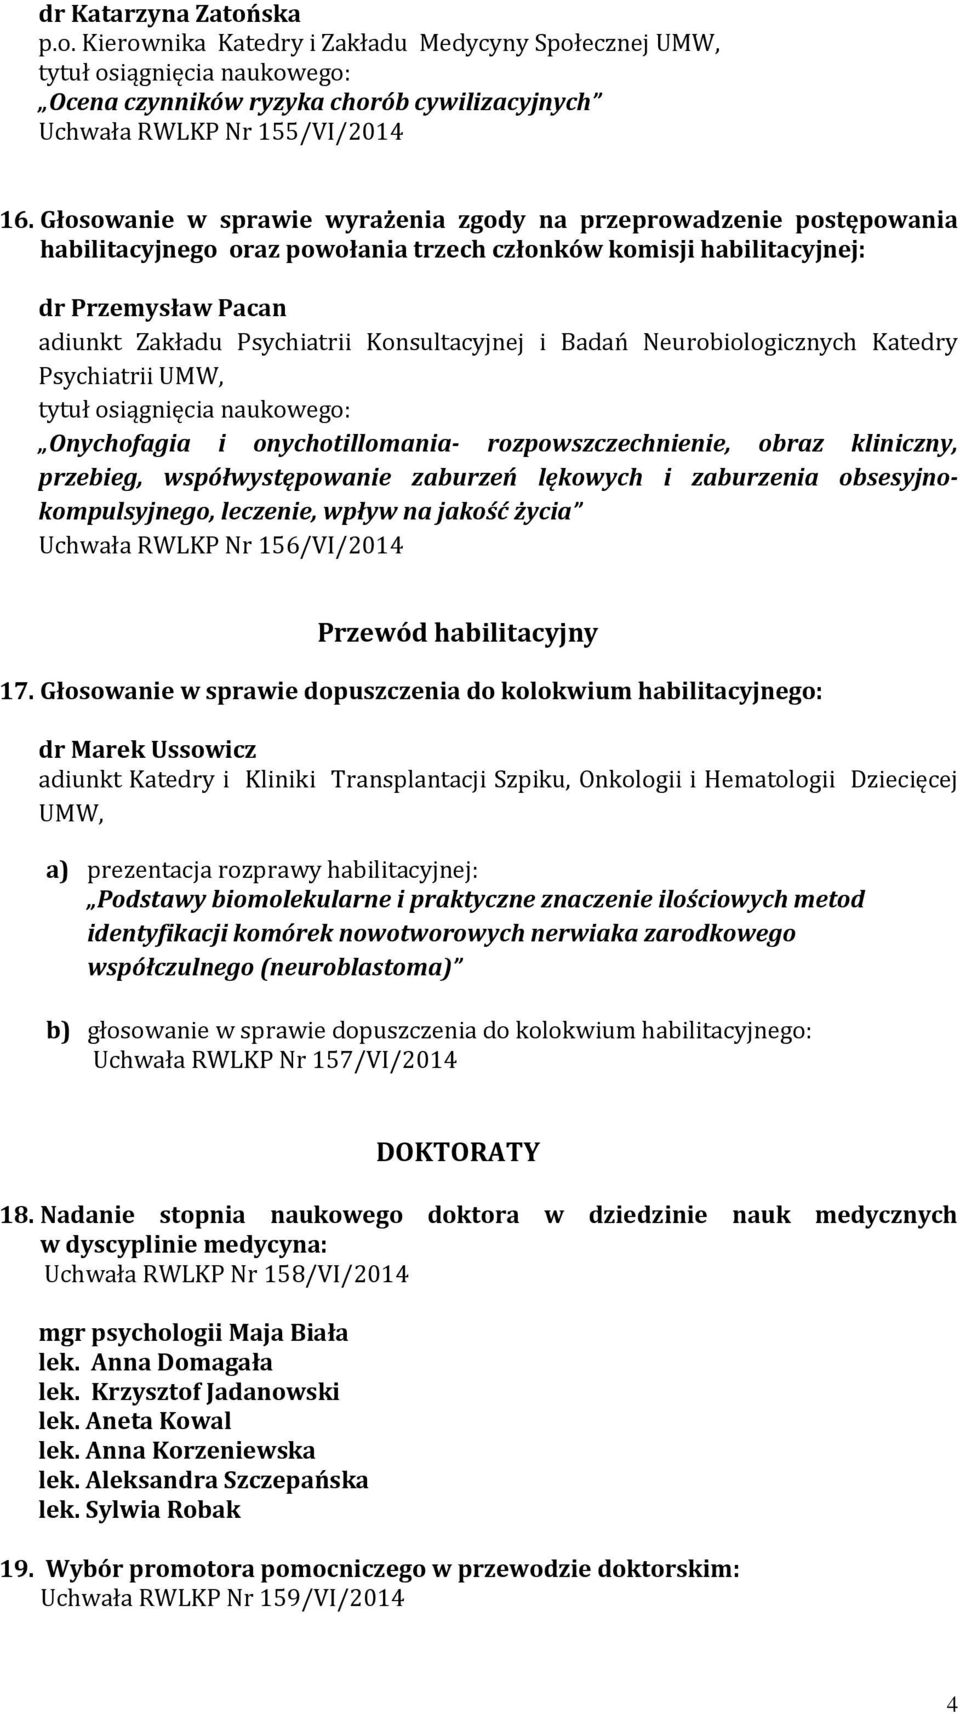 Konsultacyjnej i Badań Neurobiologicznych Katedry Psychiatrii UMW, tytuł osiągnięcia naukowego: Onychofagia i onychotillomania- rozpowszczechnienie, obraz kliniczny, przebieg, współwystępowanie